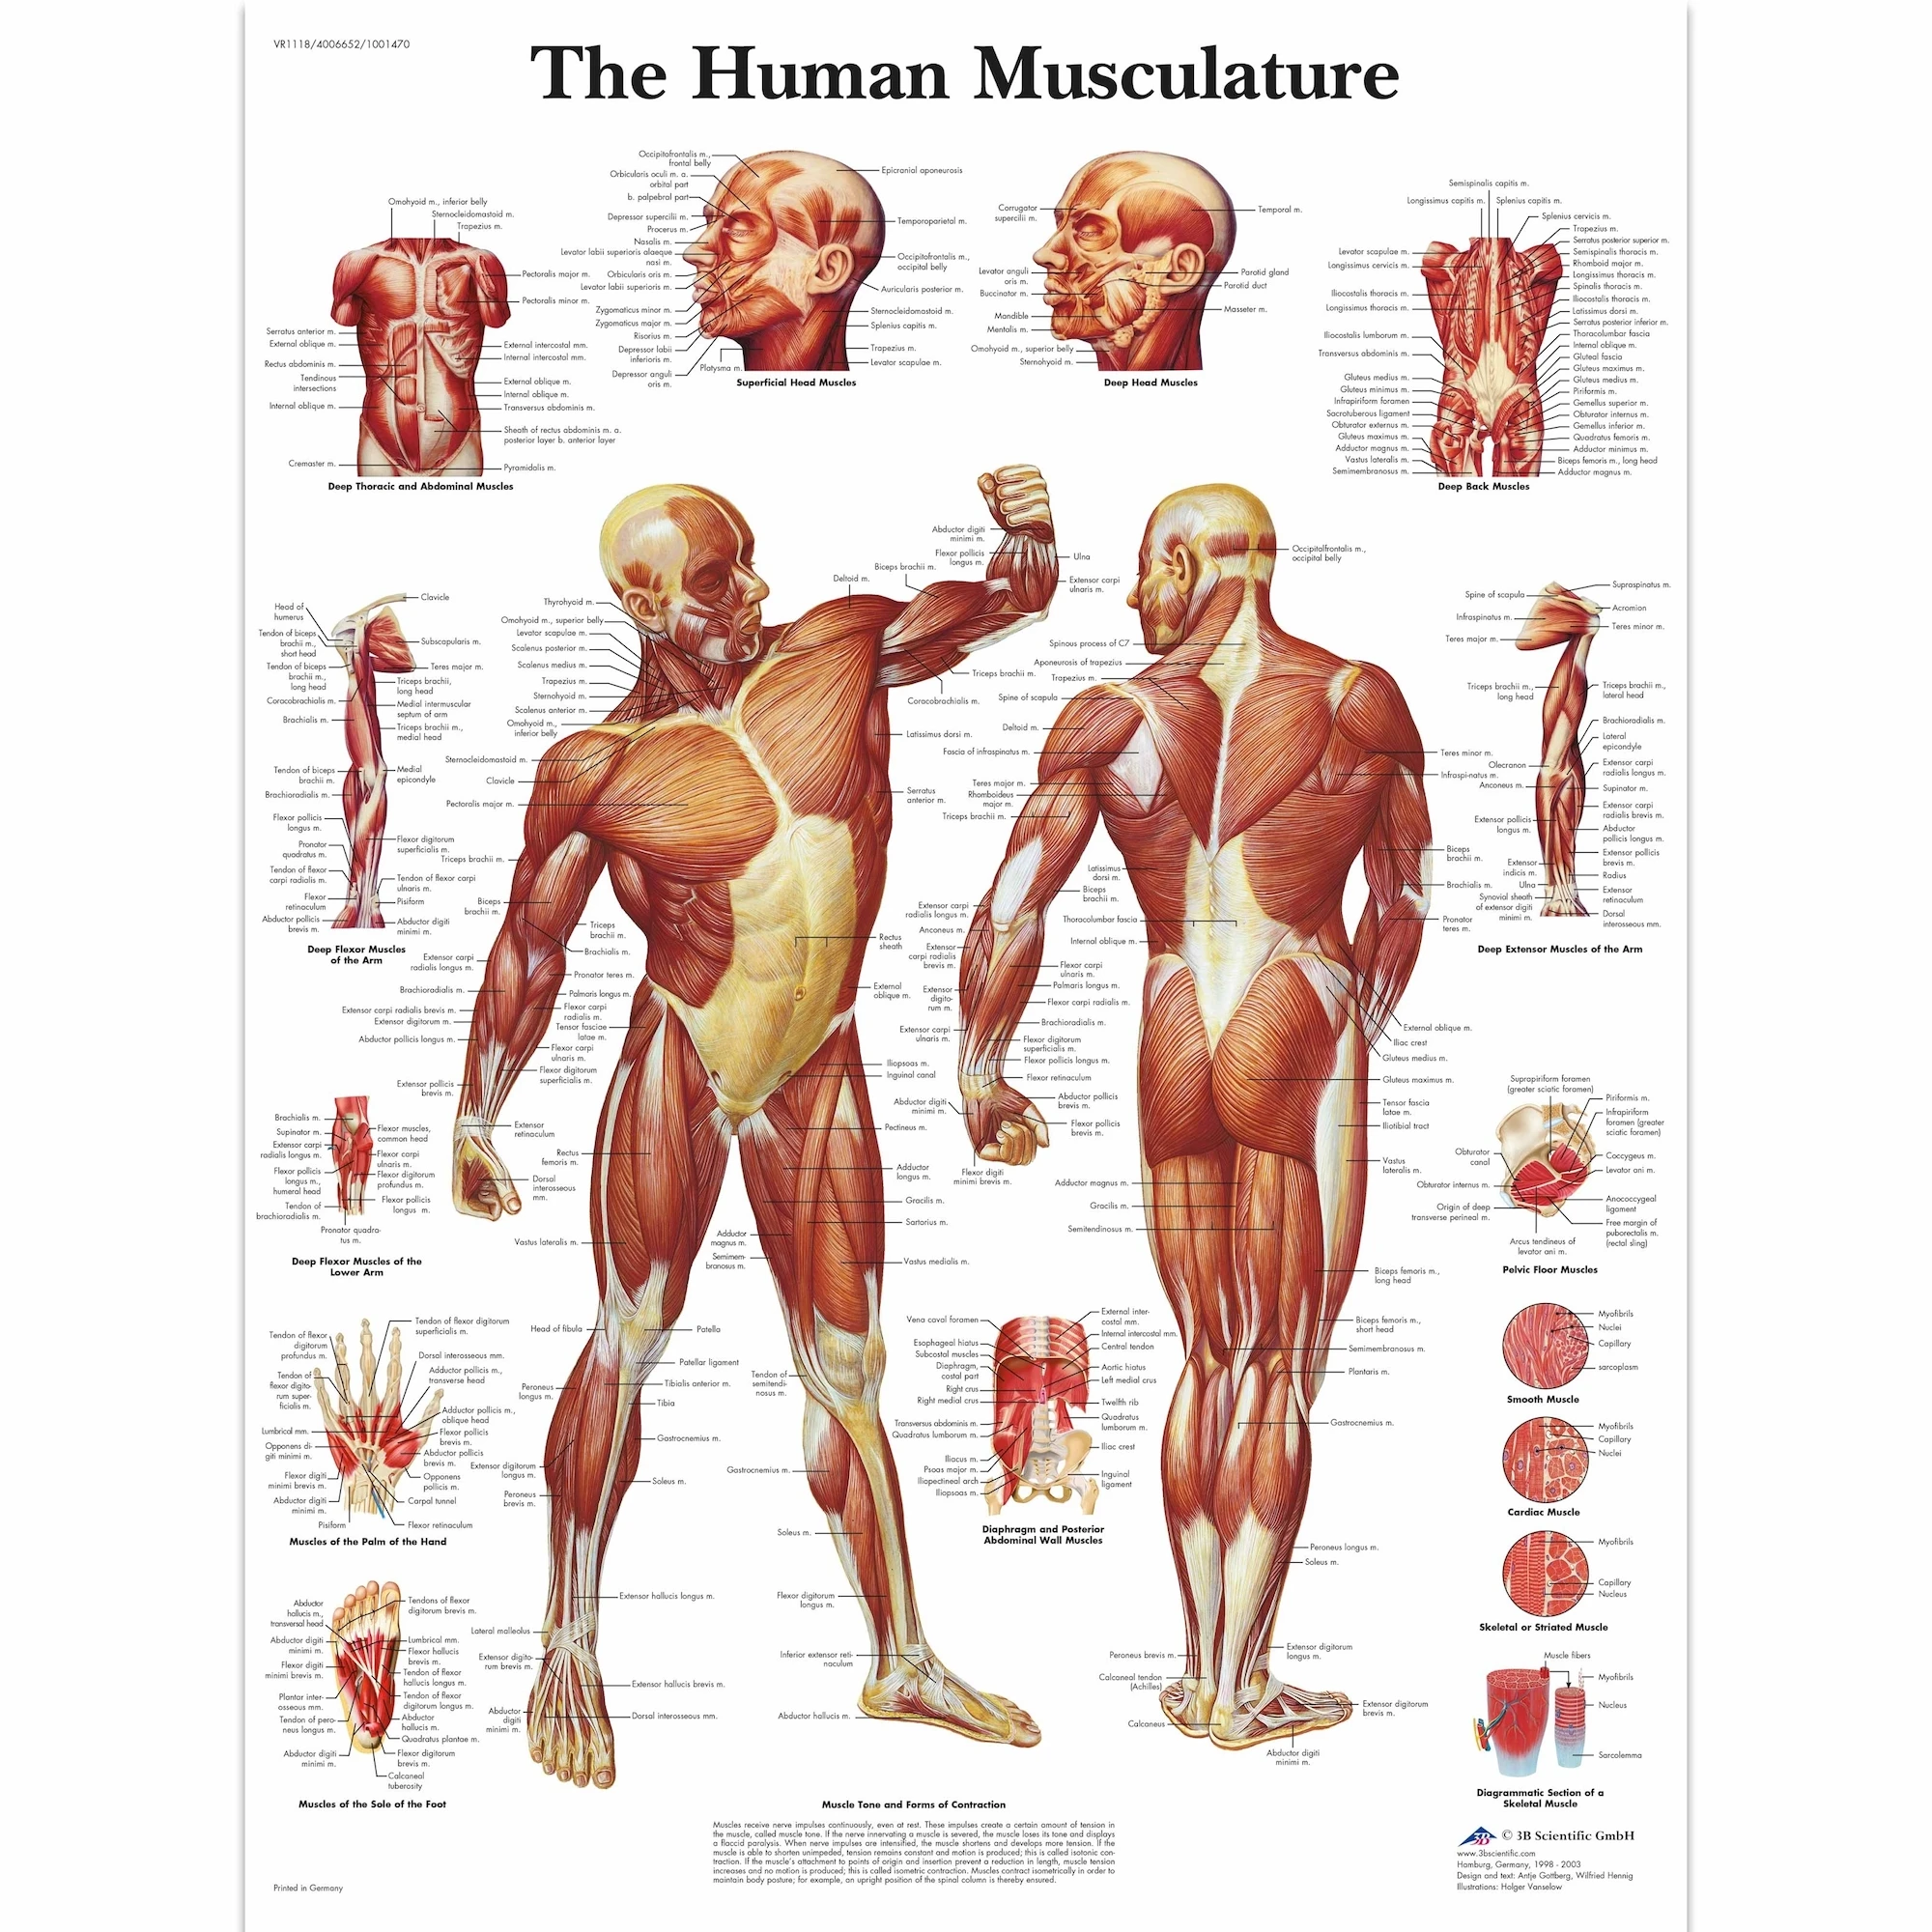 Анатомическая патология анатомический постер мышечная и фитнес классические